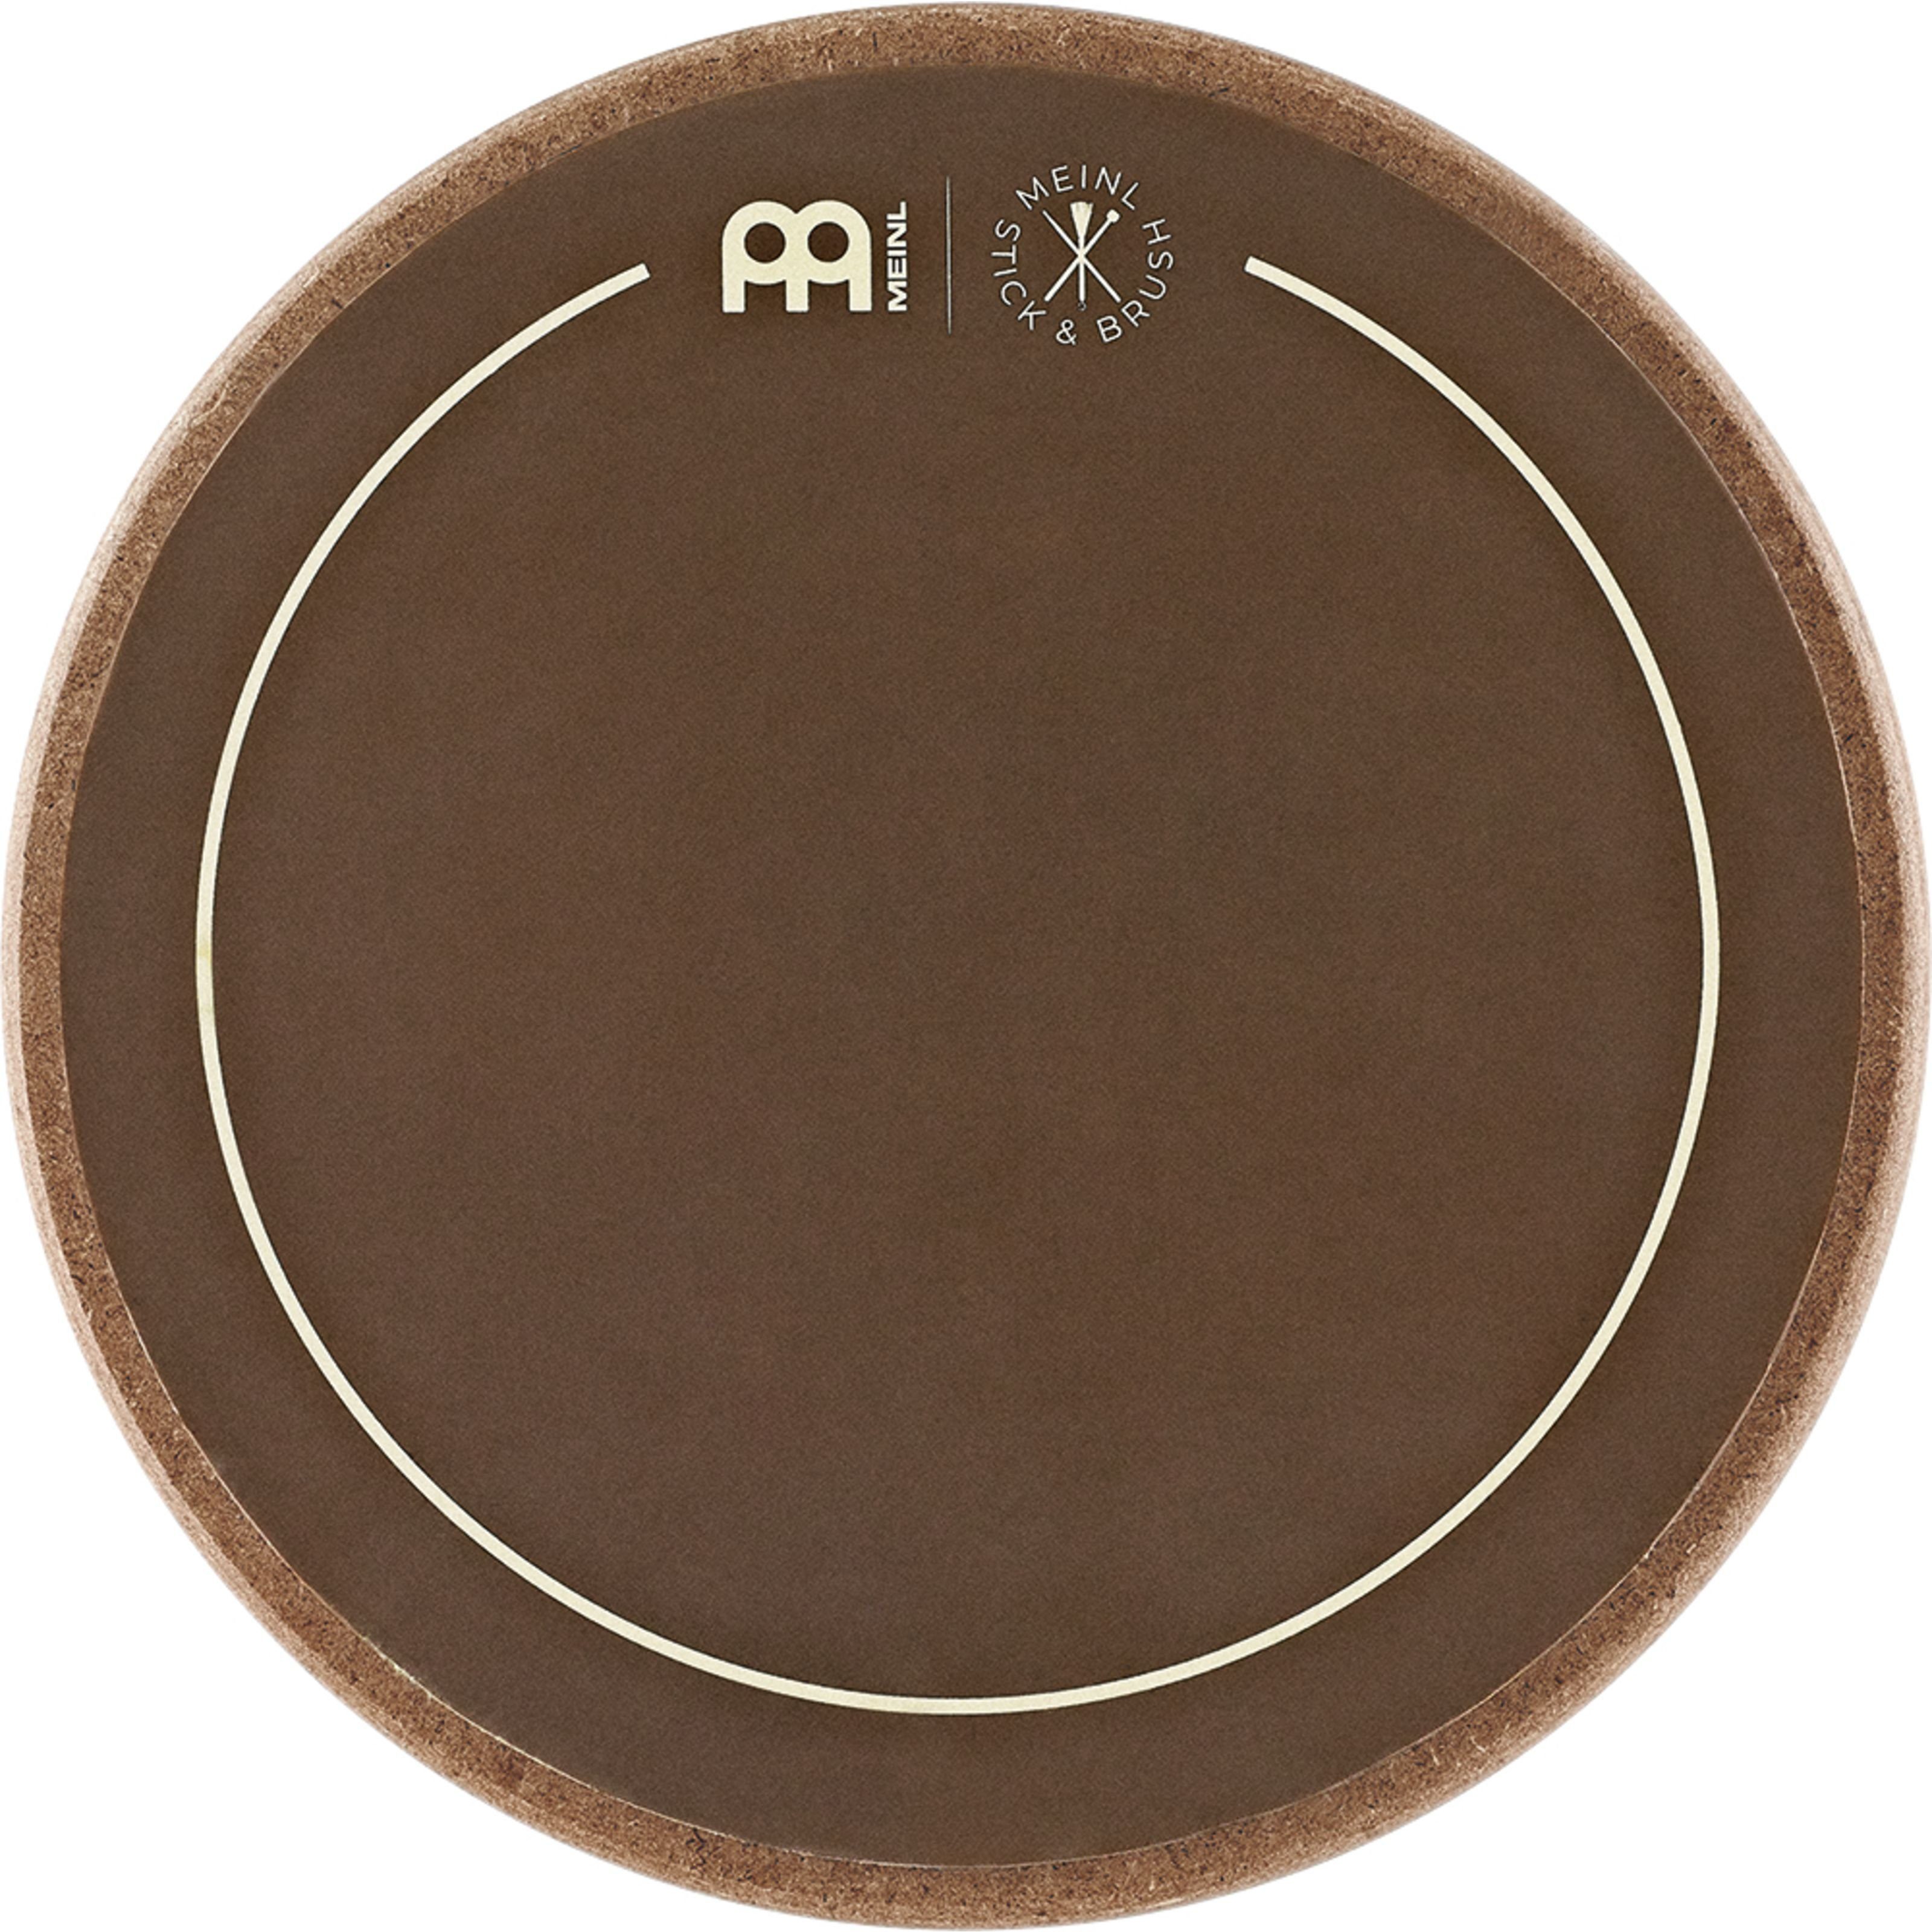 Meinl Percussion Spielzeug-Musikinstrument, SB508 Practice Pad 6" - Zubehör für Drums